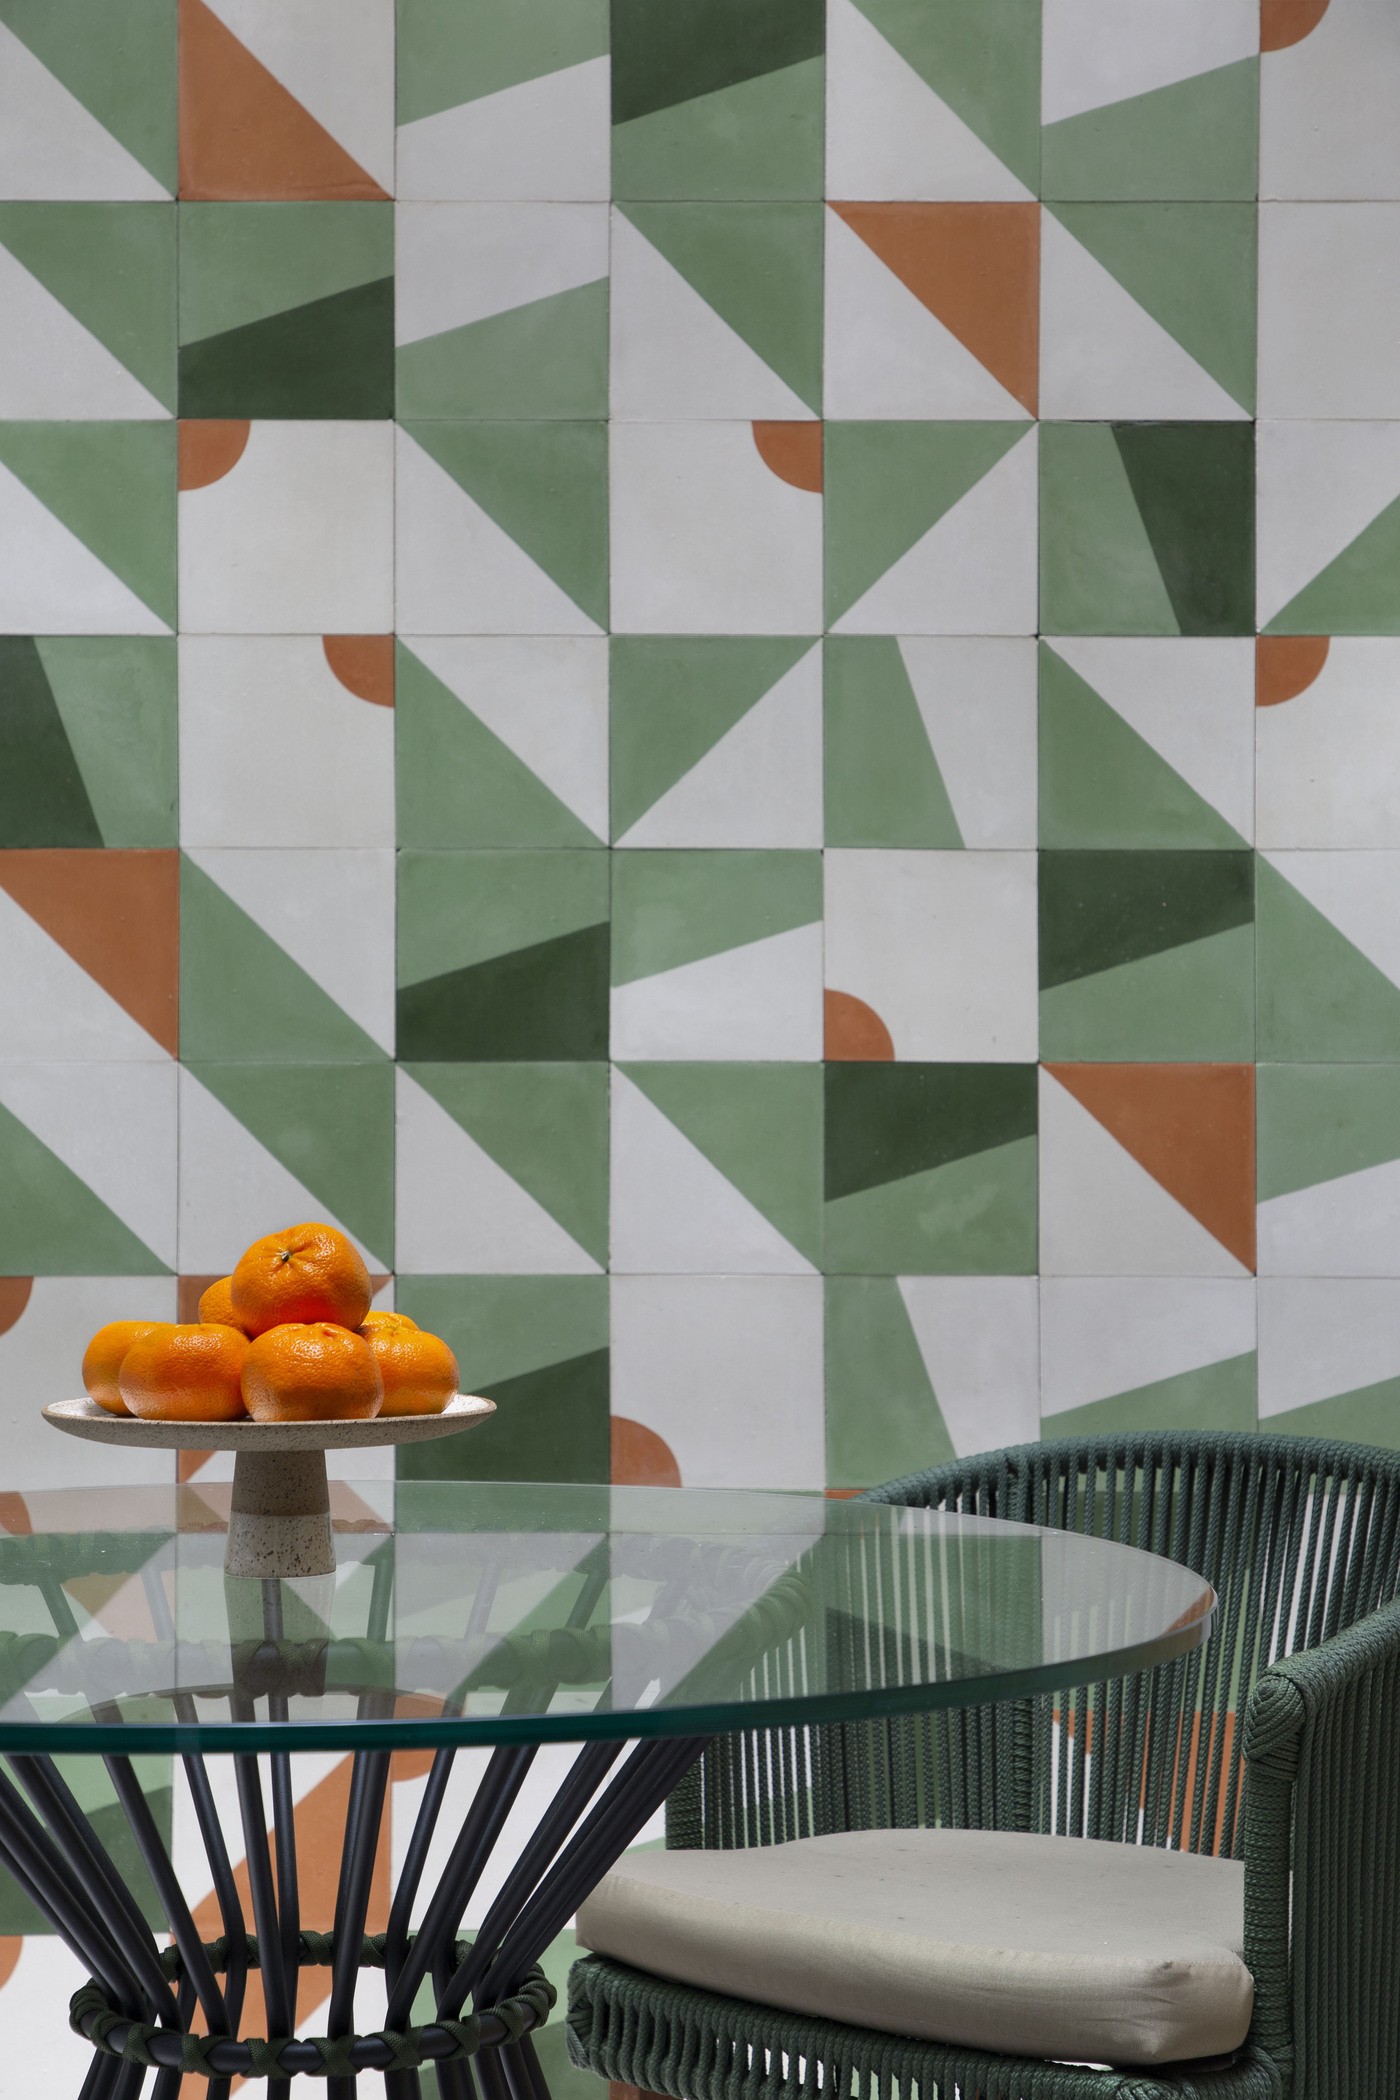 Décor do dia: cozinha com marcenaria verde é integrada à sala de almoço, após reforma (Foto: Denilson Machado/MCA Estúdio)